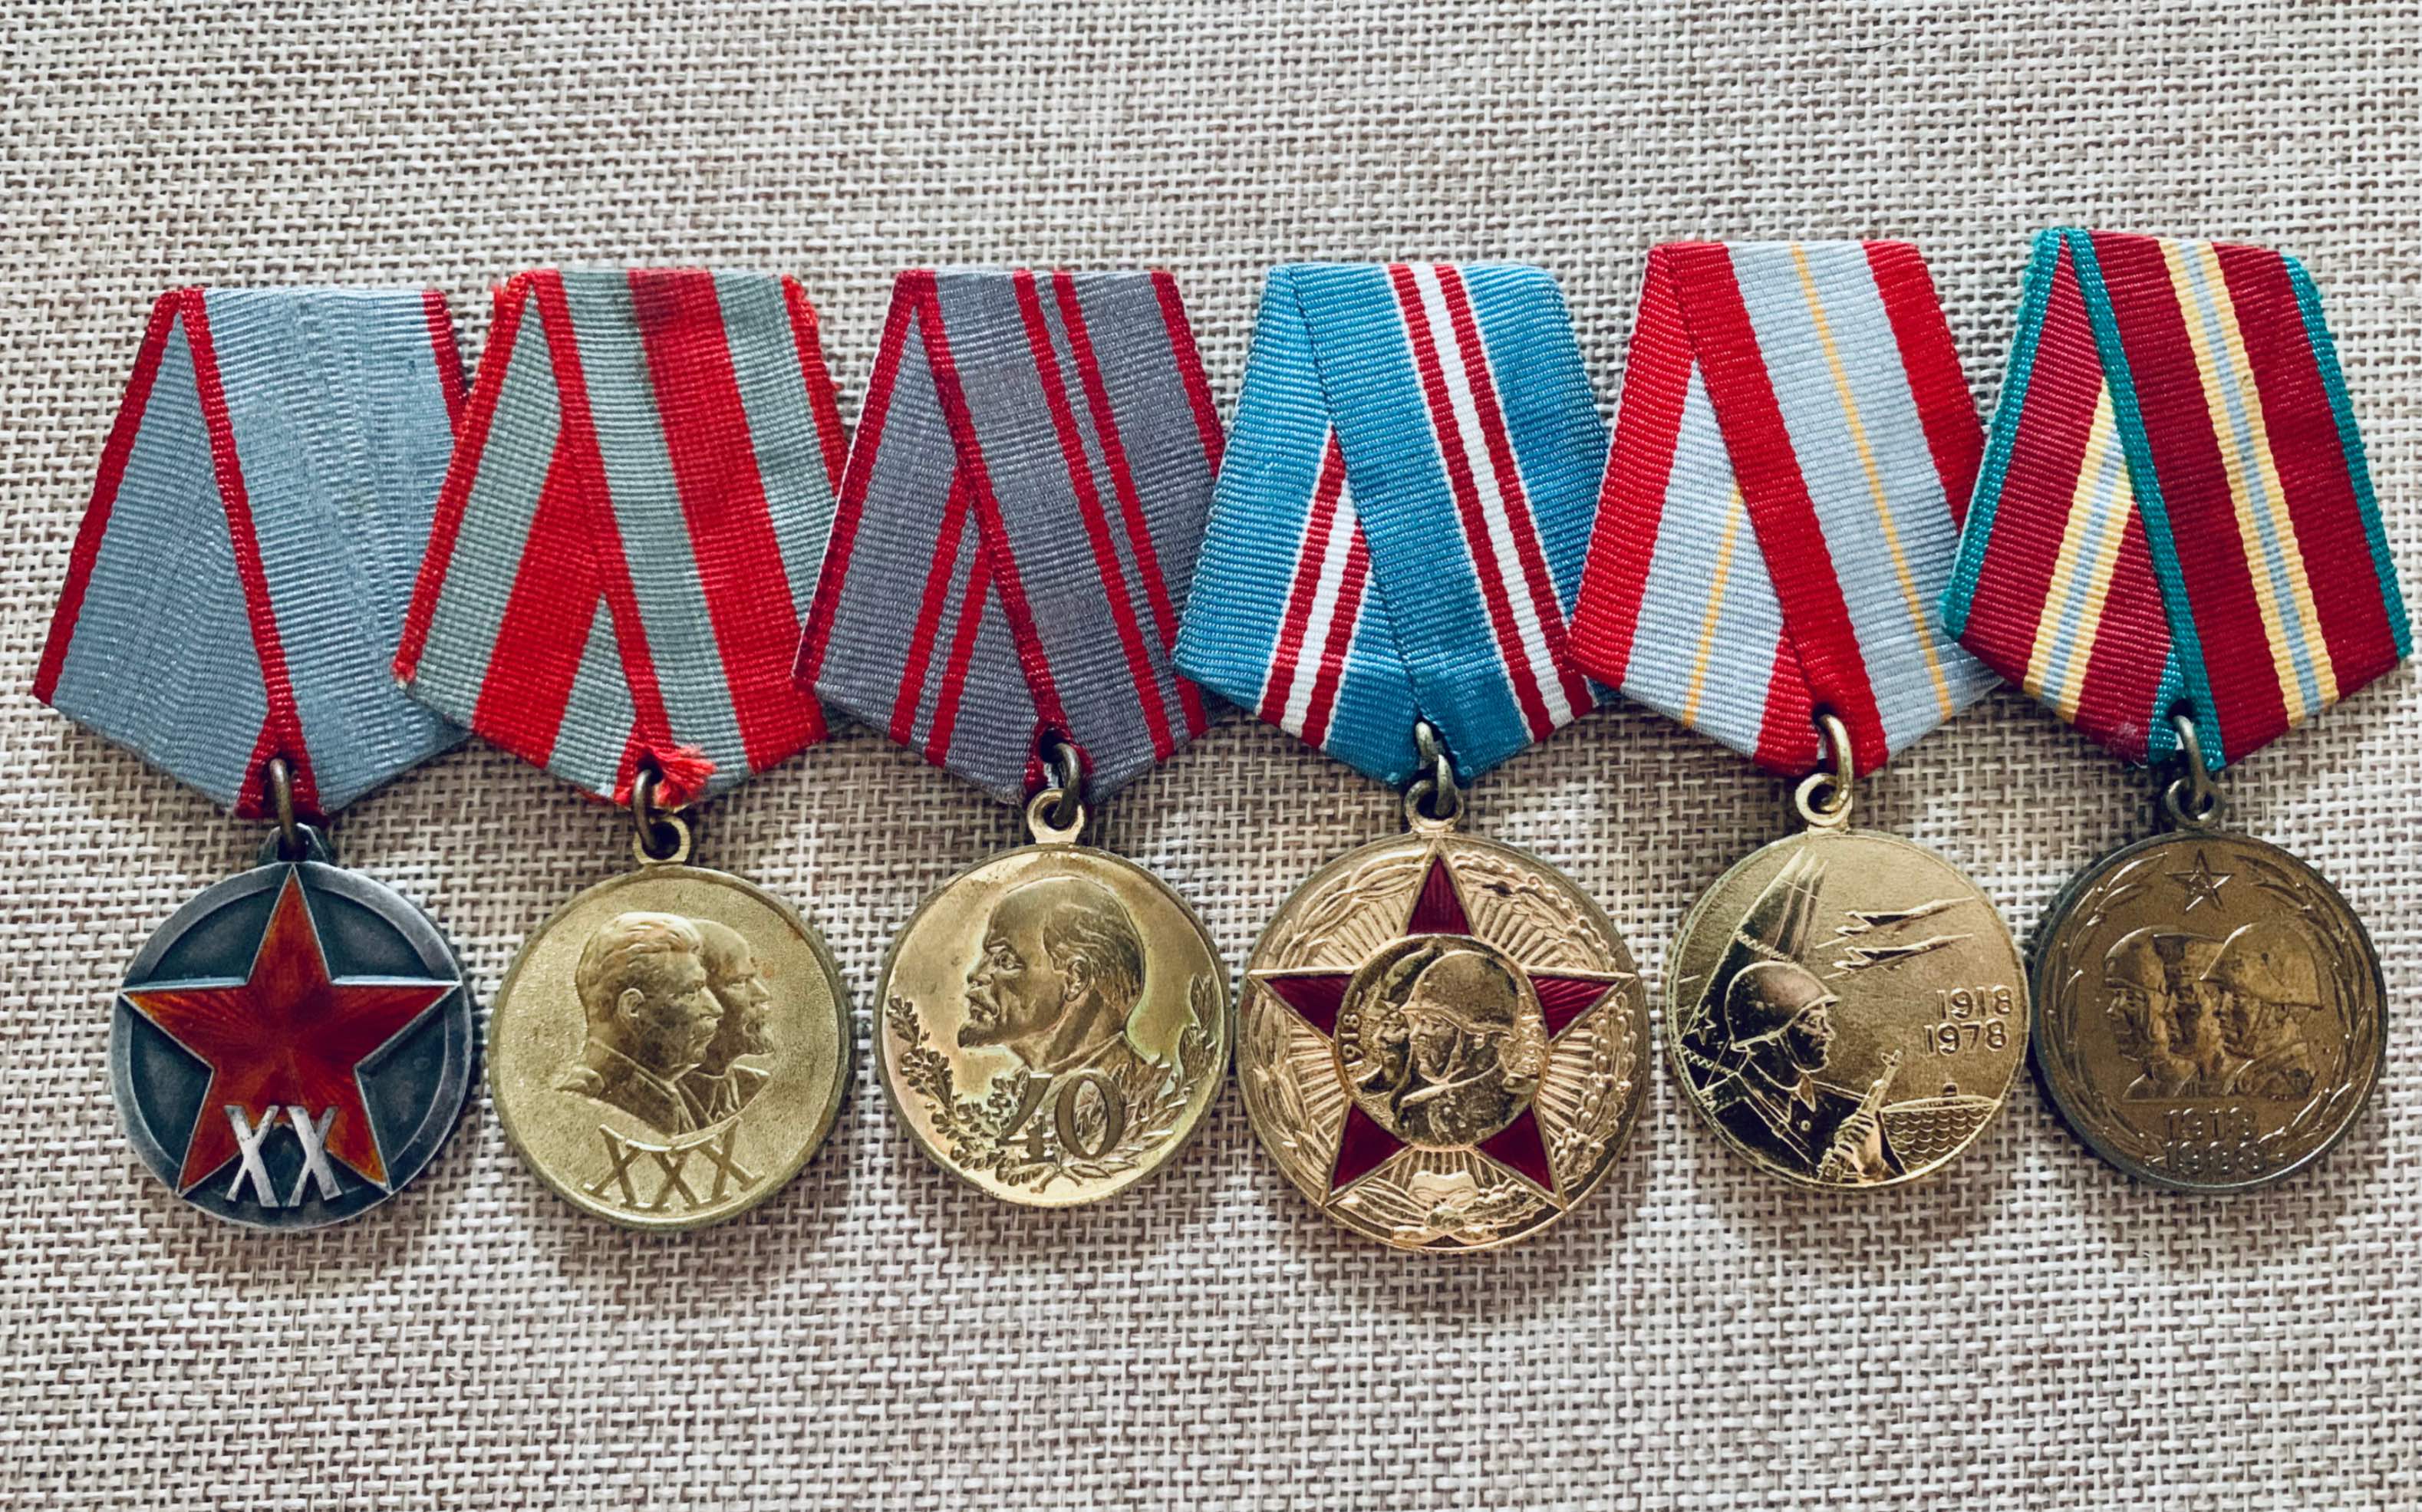 本人的苏联军事类勋奖章鉴赏(四)——红星勋章 - 哔哩哔哩